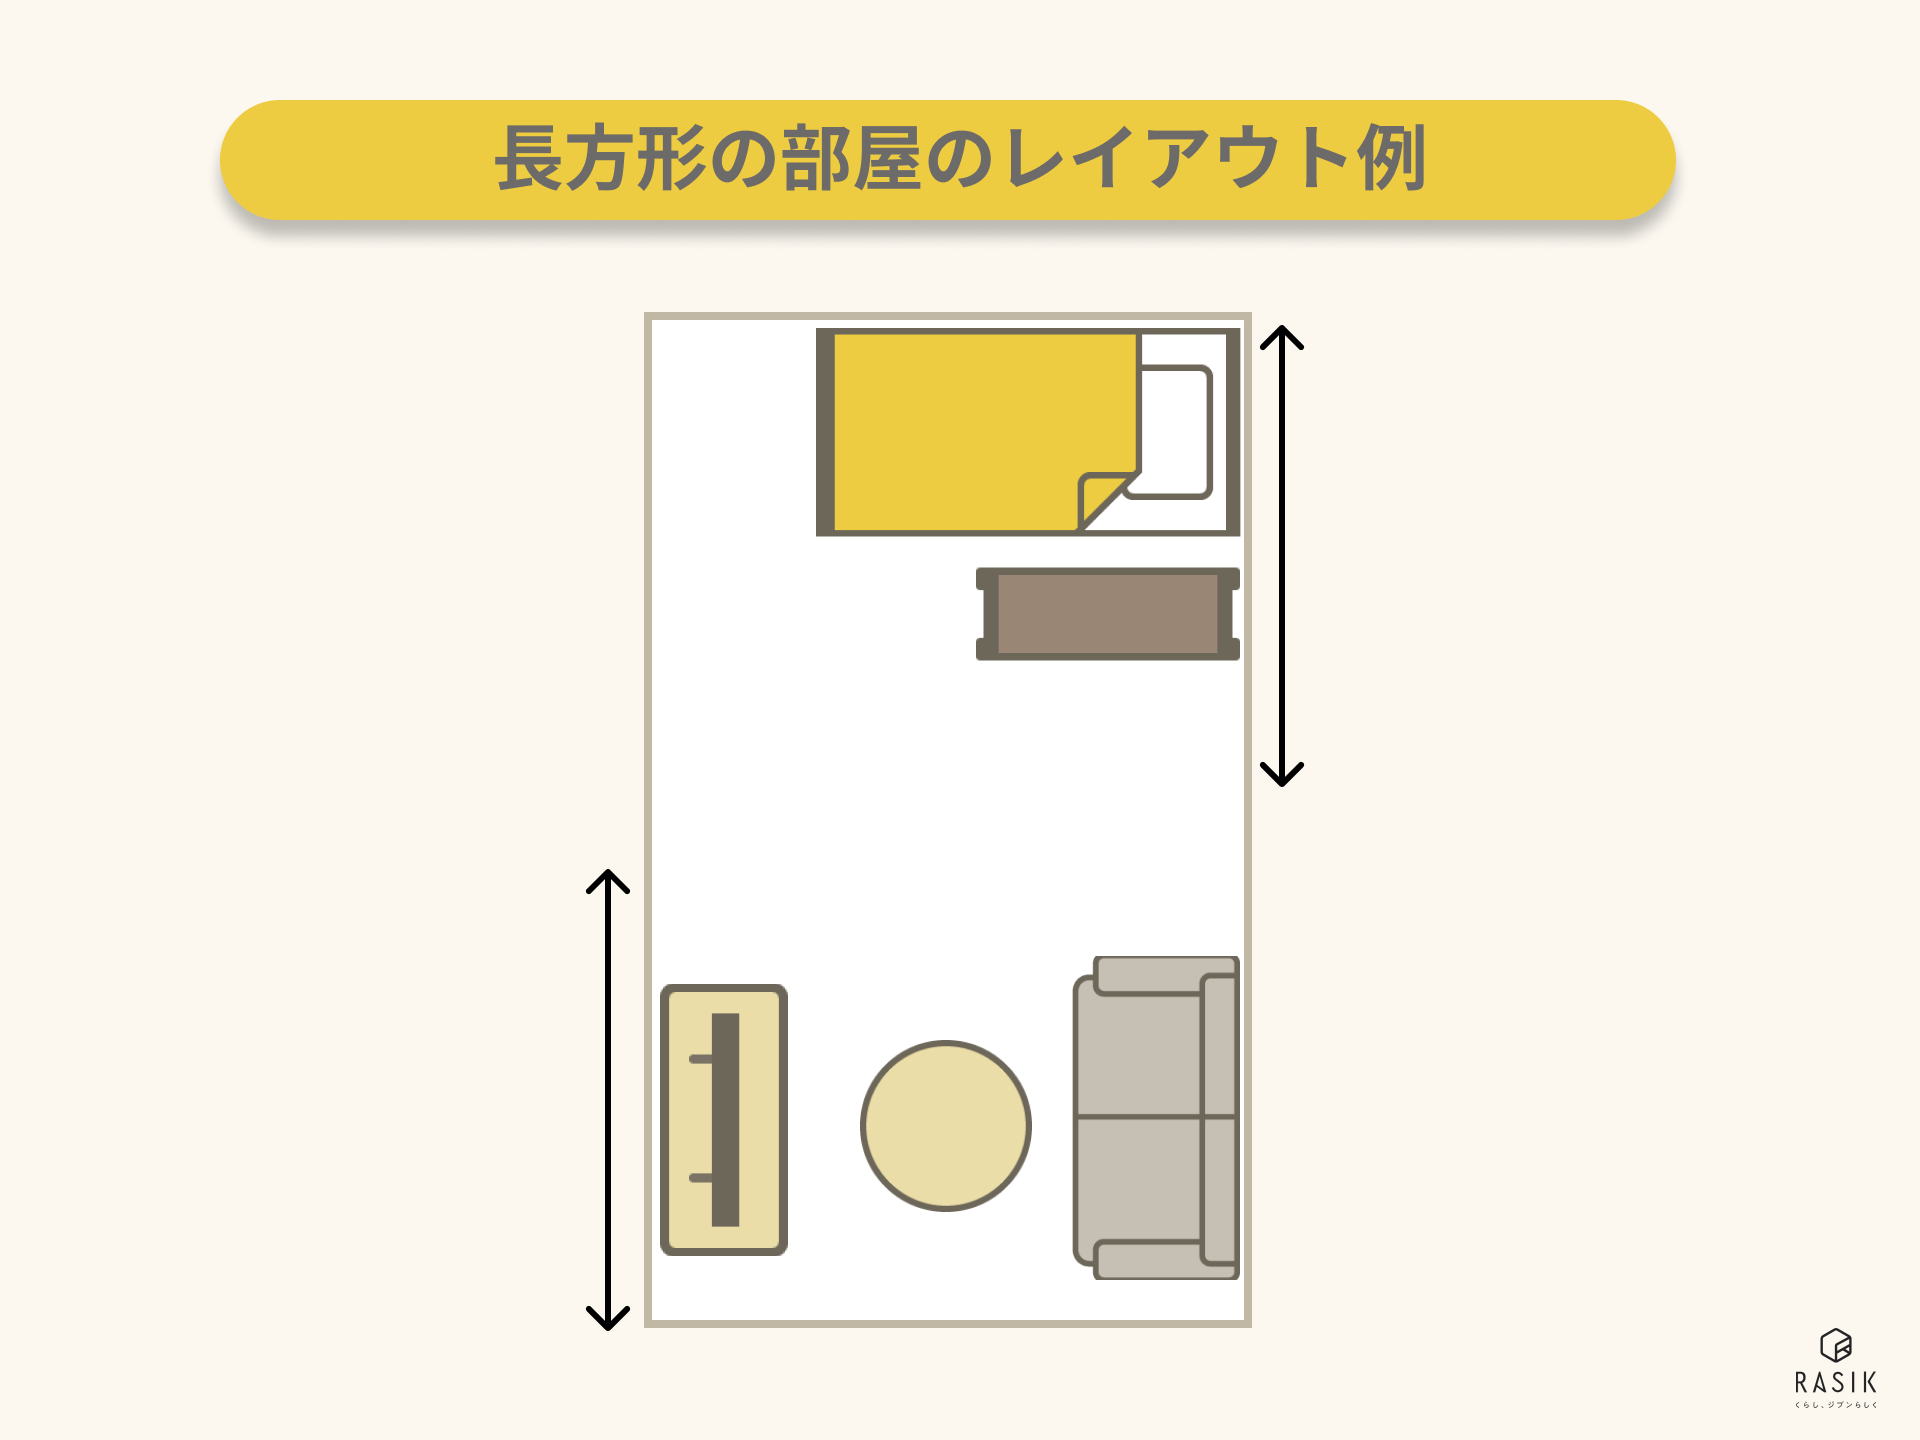 8畳の長方形の部屋のレイアウト例